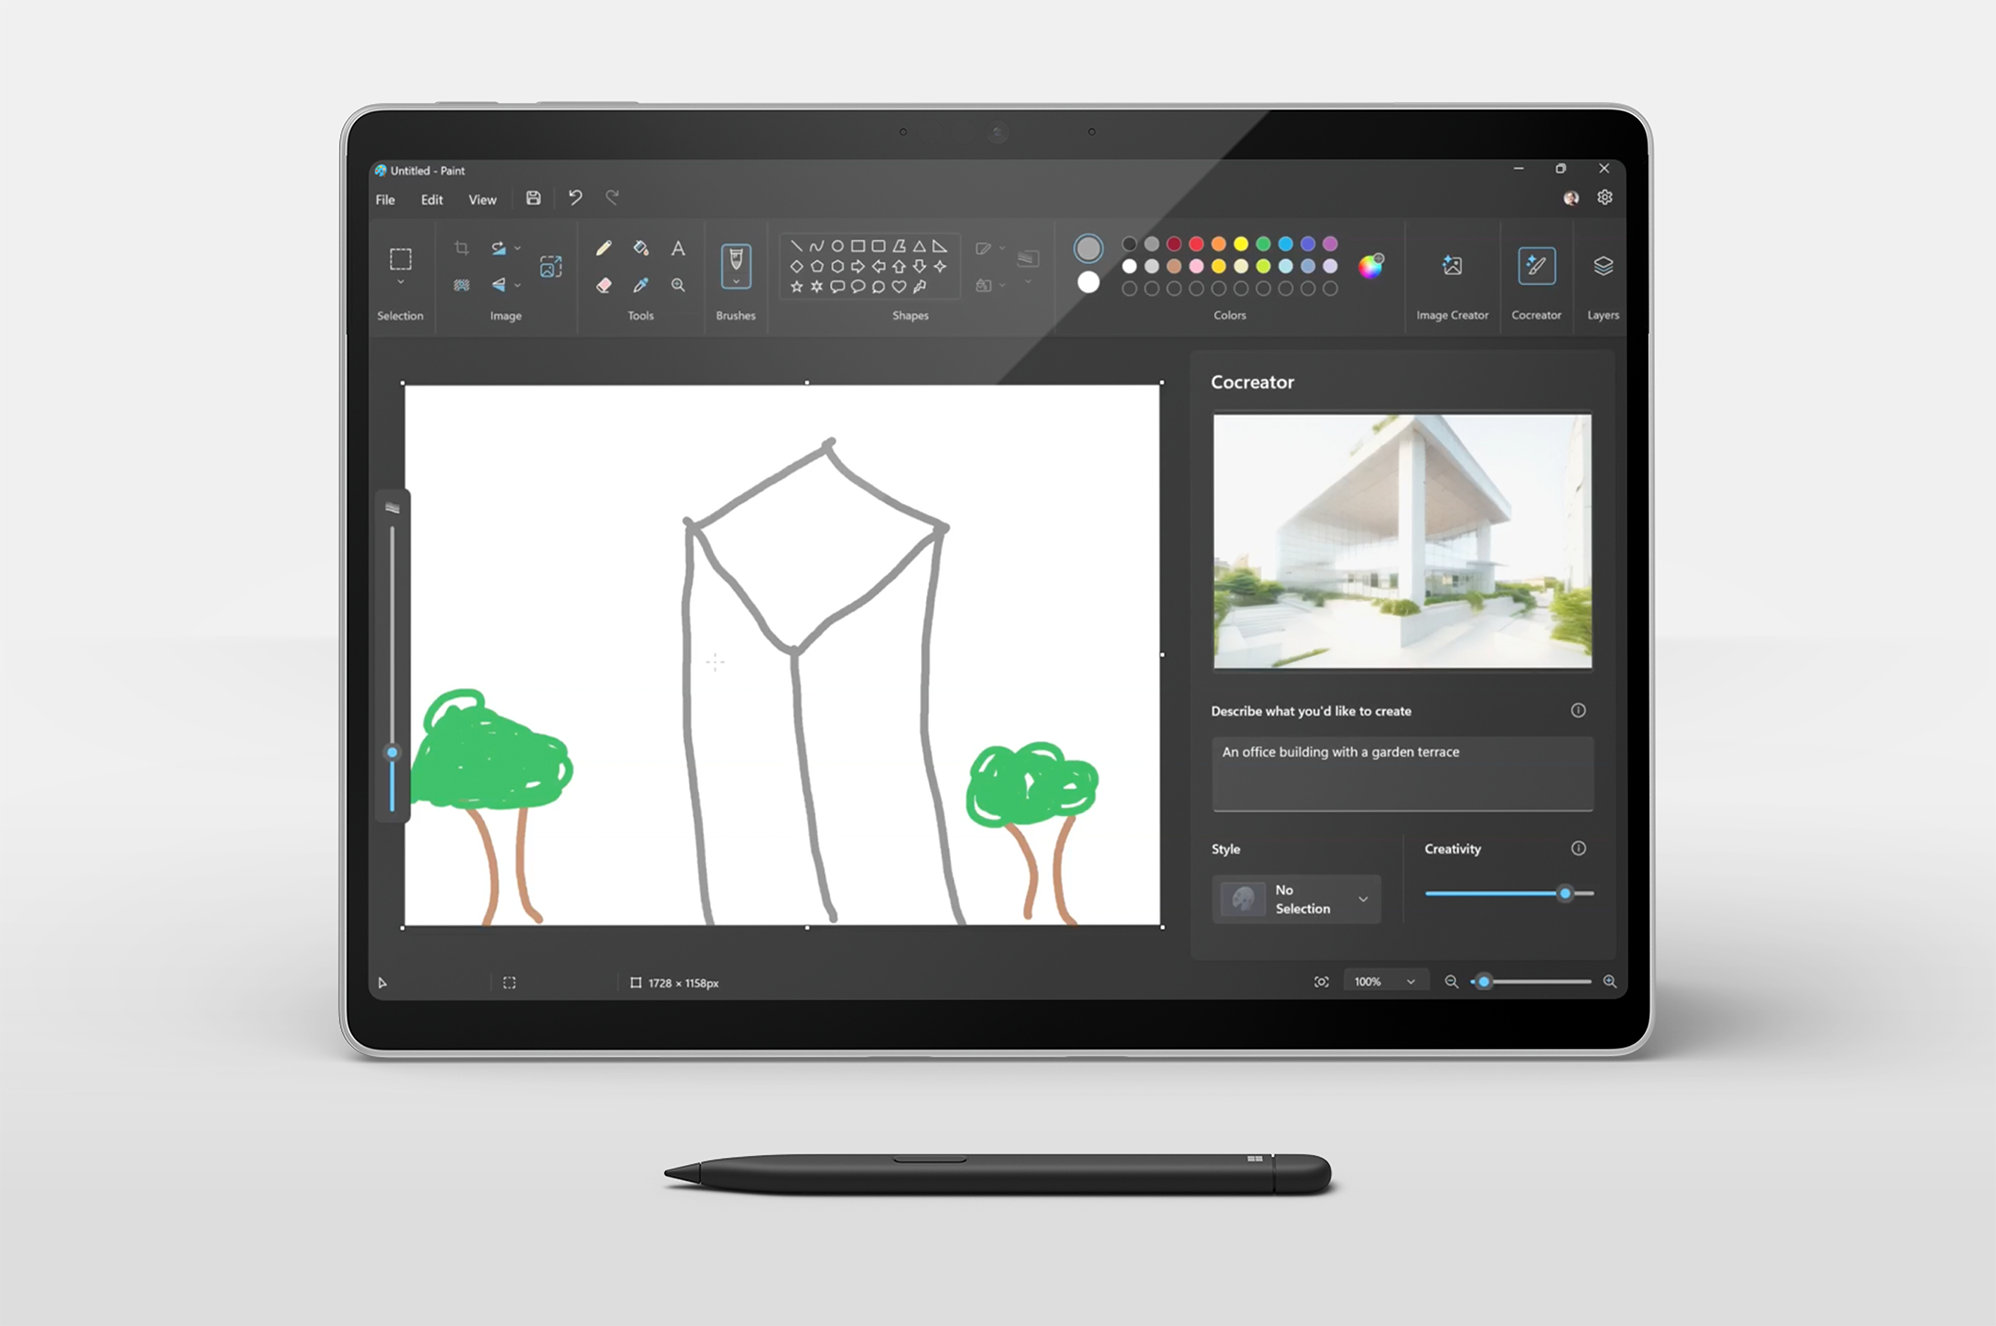 キーボードを取り外した状態でコクリエーターの画面を表示する Surface Pro デバイスの画像